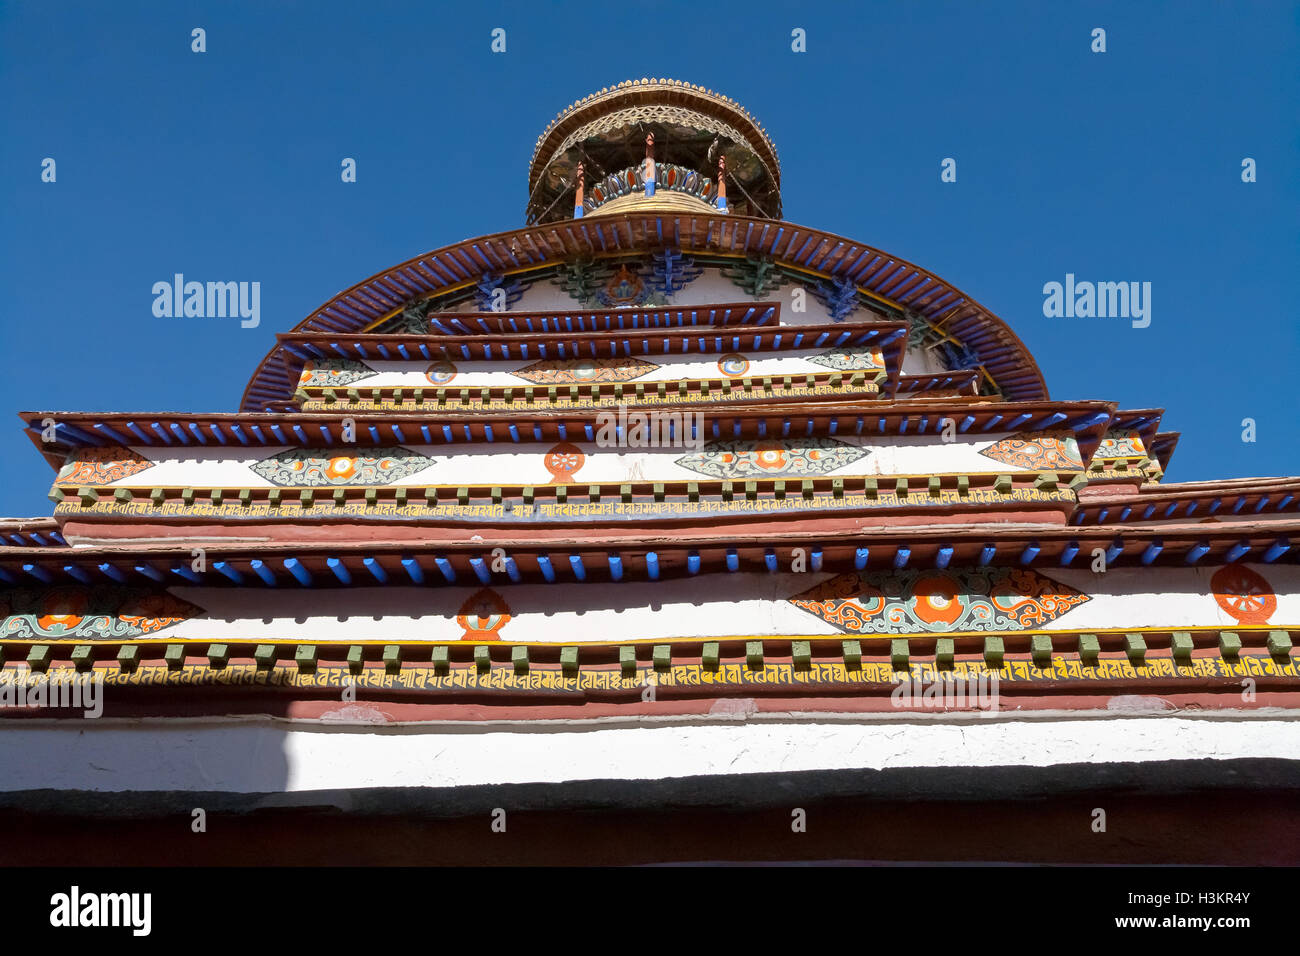 Famous Kumbum Stupa. Stock Photo